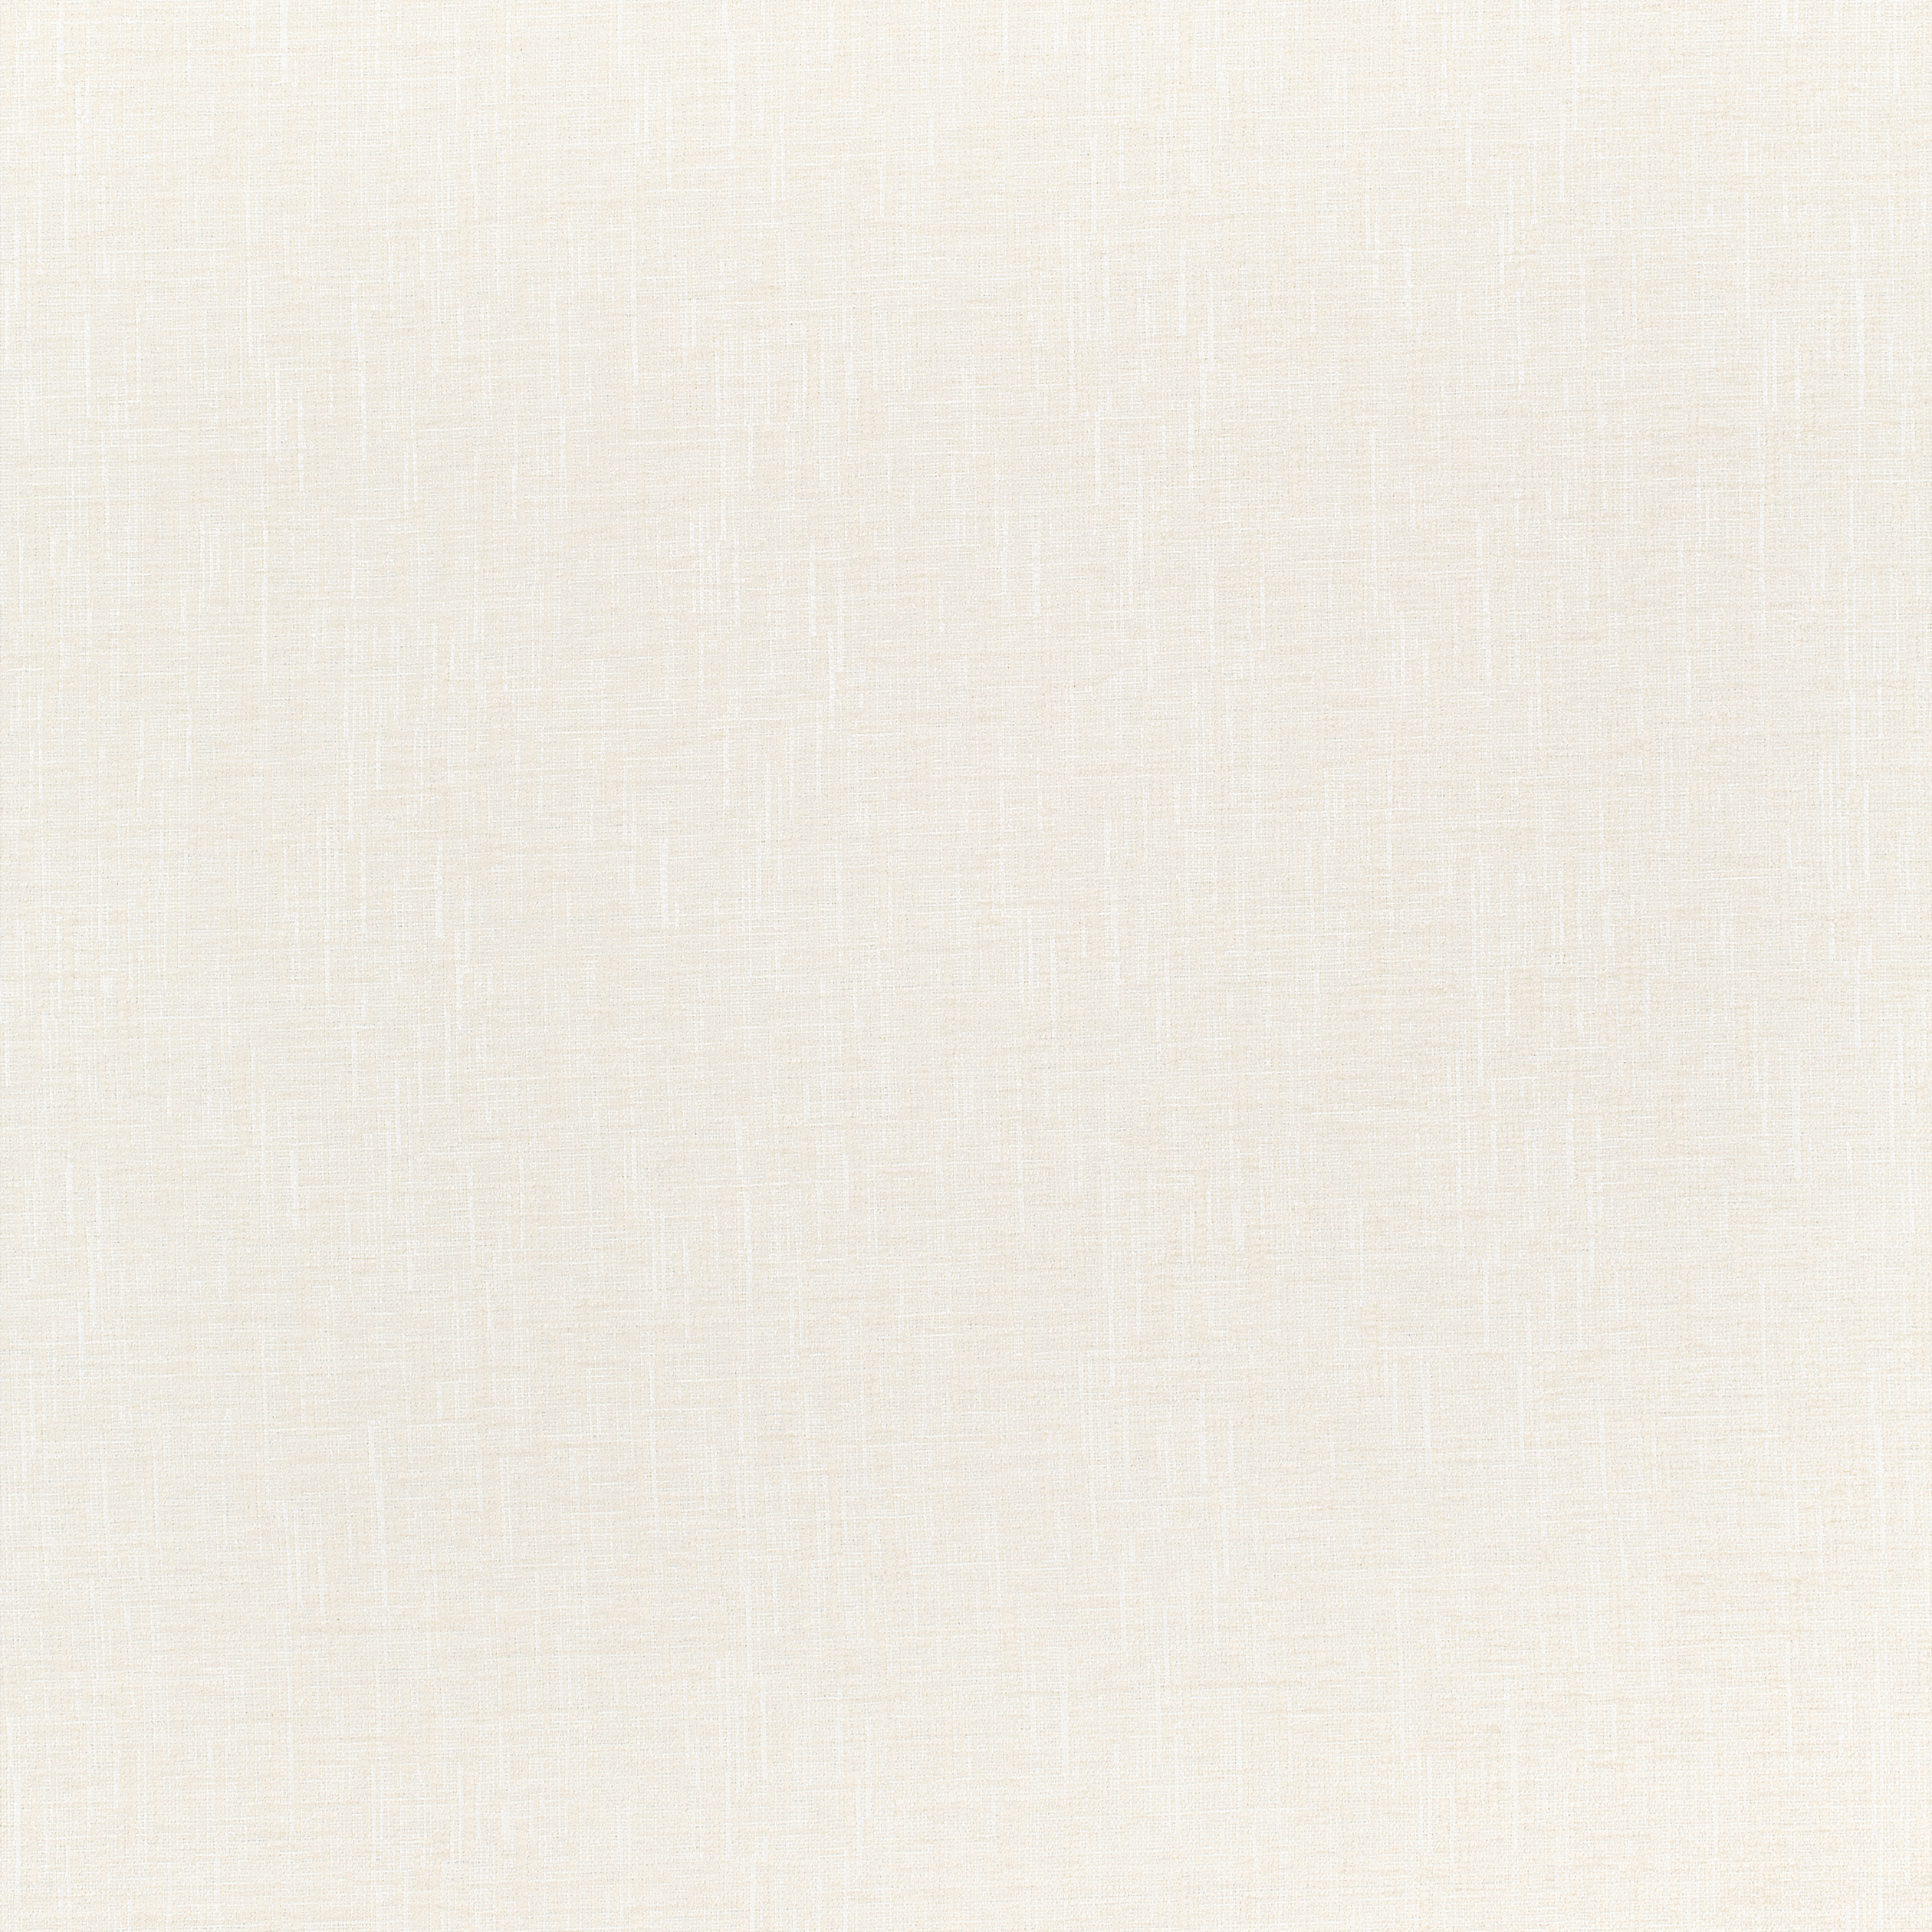 Fabric viscose (rayon). Ivory. Texture, background, pattern. Stock Photo